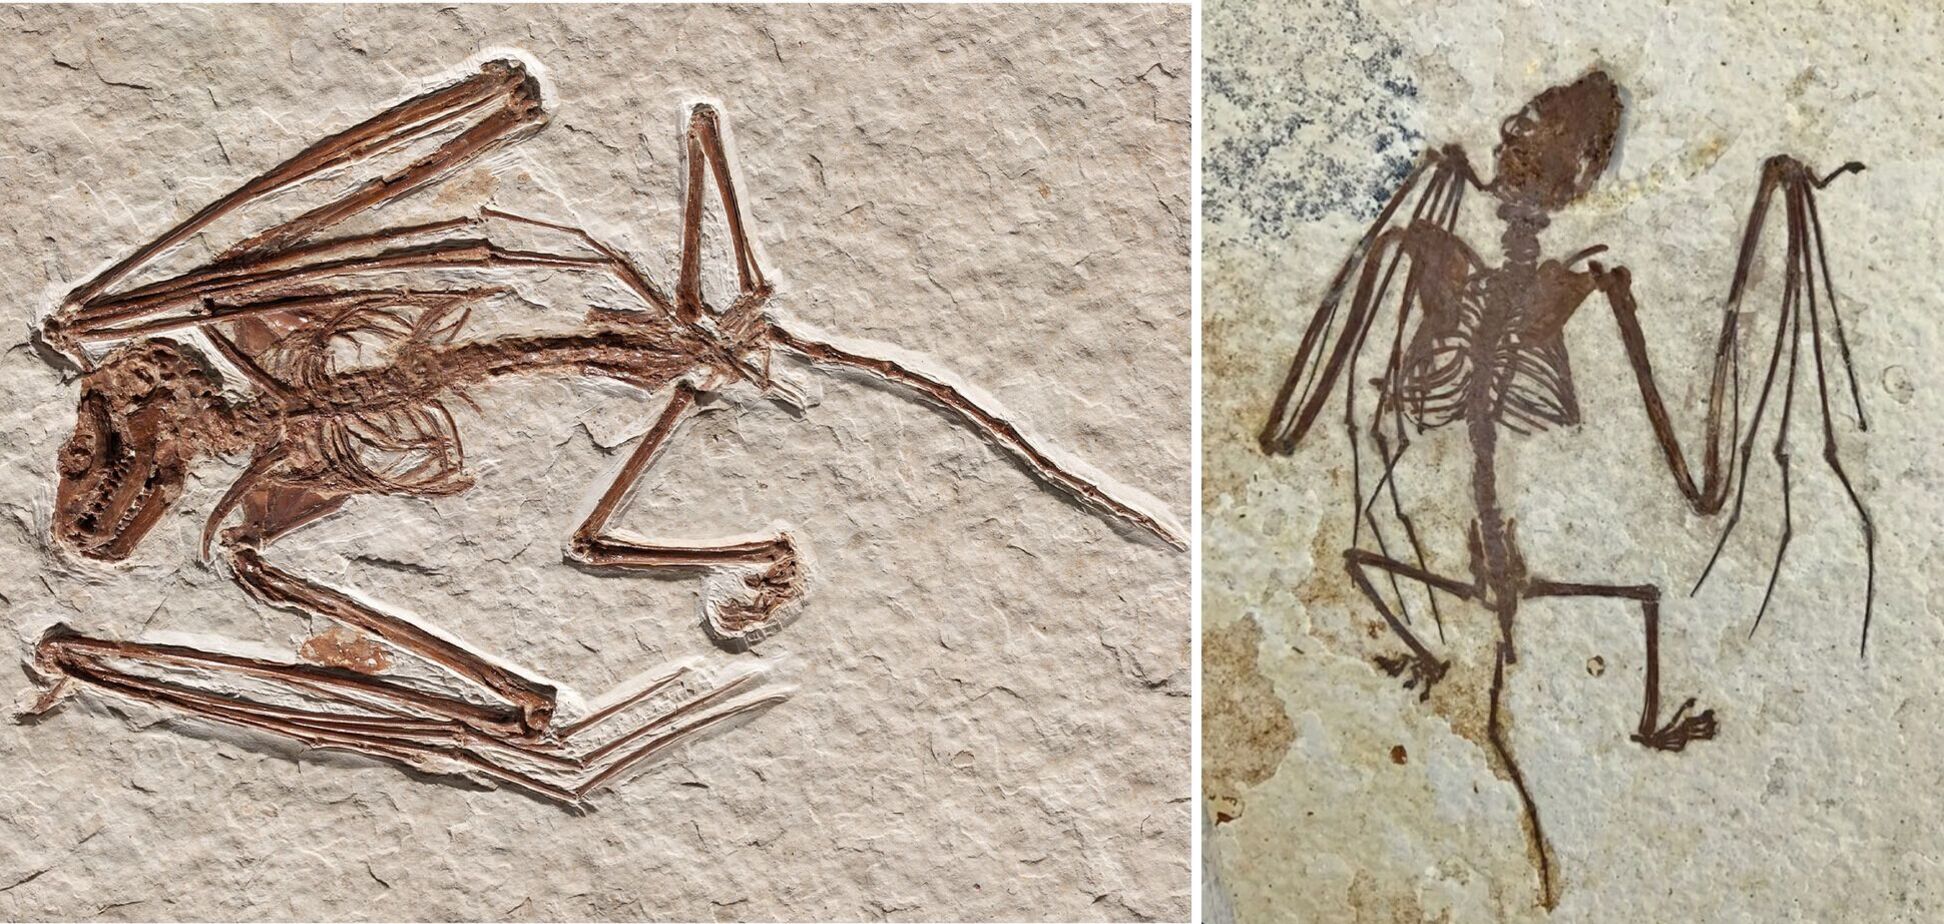 Найден скелет ранее неизвестного вида крылатого существа, которому 52 миллиона лет. Фото